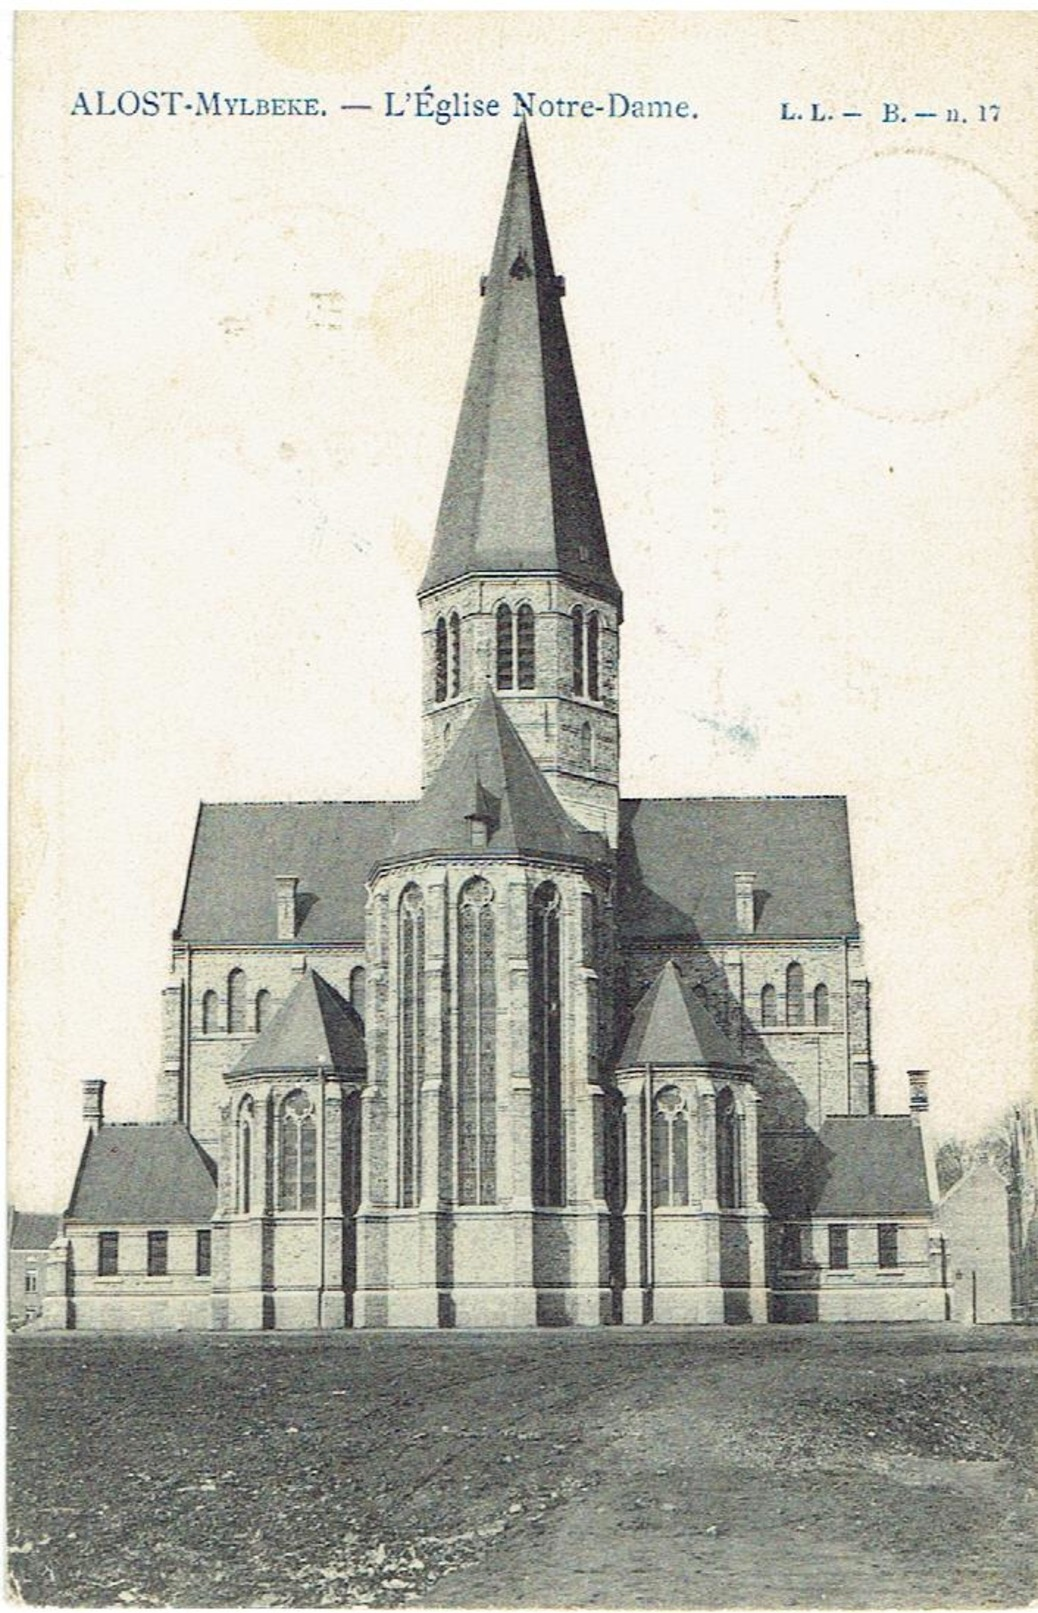 ALOST - Mylbeke - L' Eglise Notre-Dame - L.L - B. N° 17 - Stempelfout 1906-1960 - Erreur Dans Le Cachet - Aalst